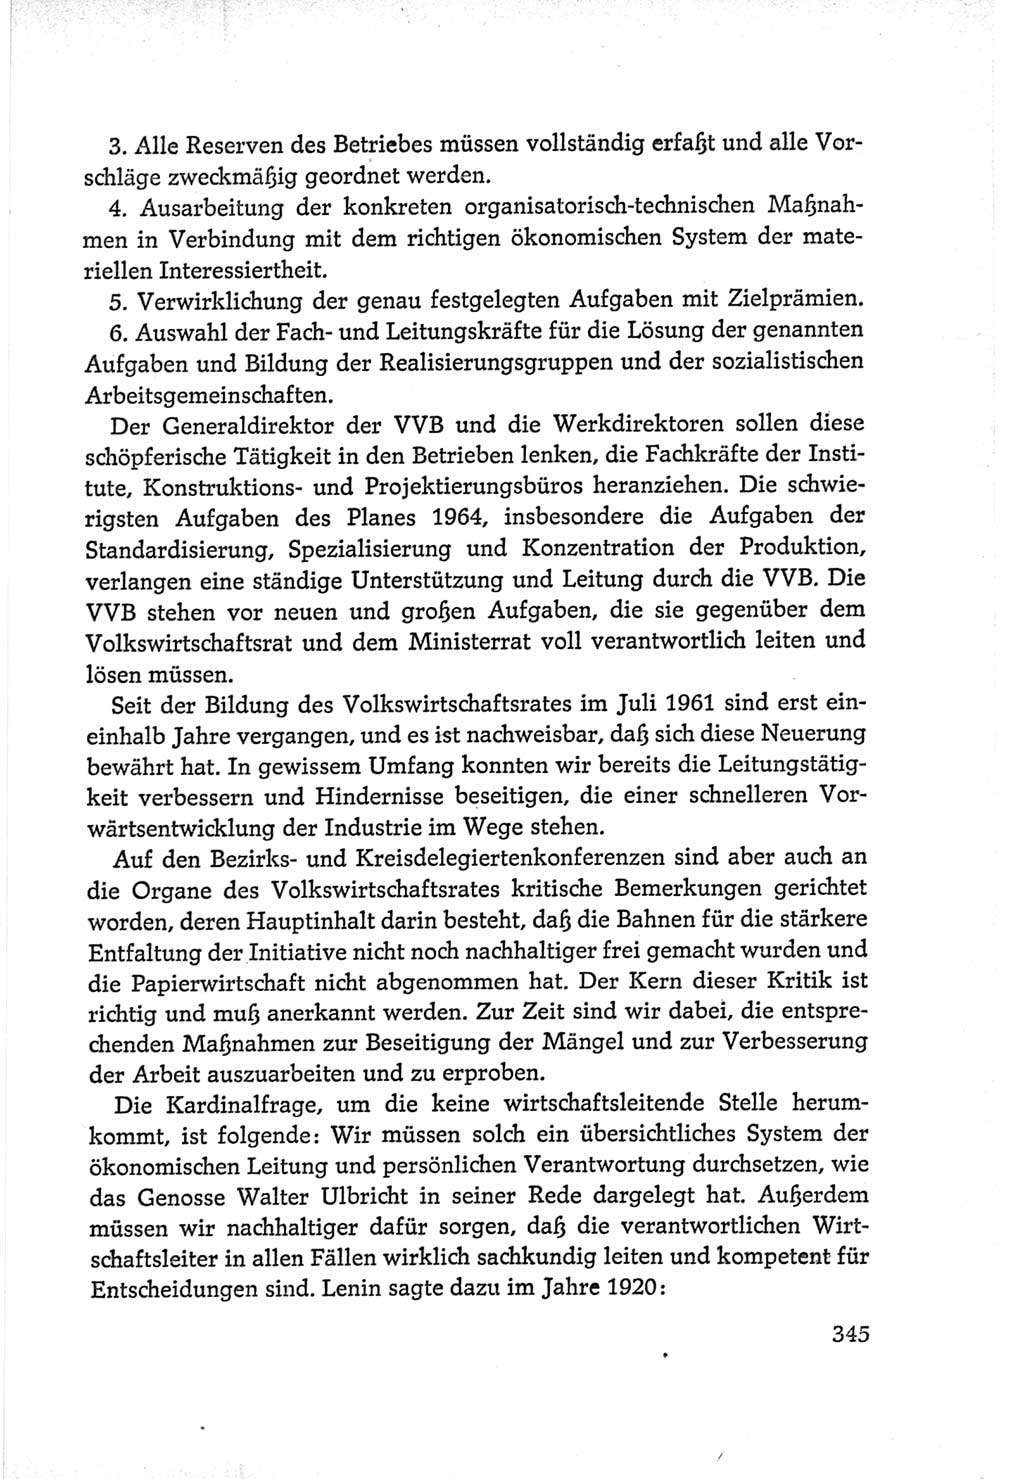 Protokoll der Verhandlungen des Ⅵ. Parteitages der Sozialistischen Einheitspartei Deutschlands (SED) [Deutsche Demokratische Republik (DDR)] 1963, Band Ⅰ, Seite 345 (Prot. Verh. Ⅵ. PT SED DDR 1963, Bd. Ⅰ, S. 345)